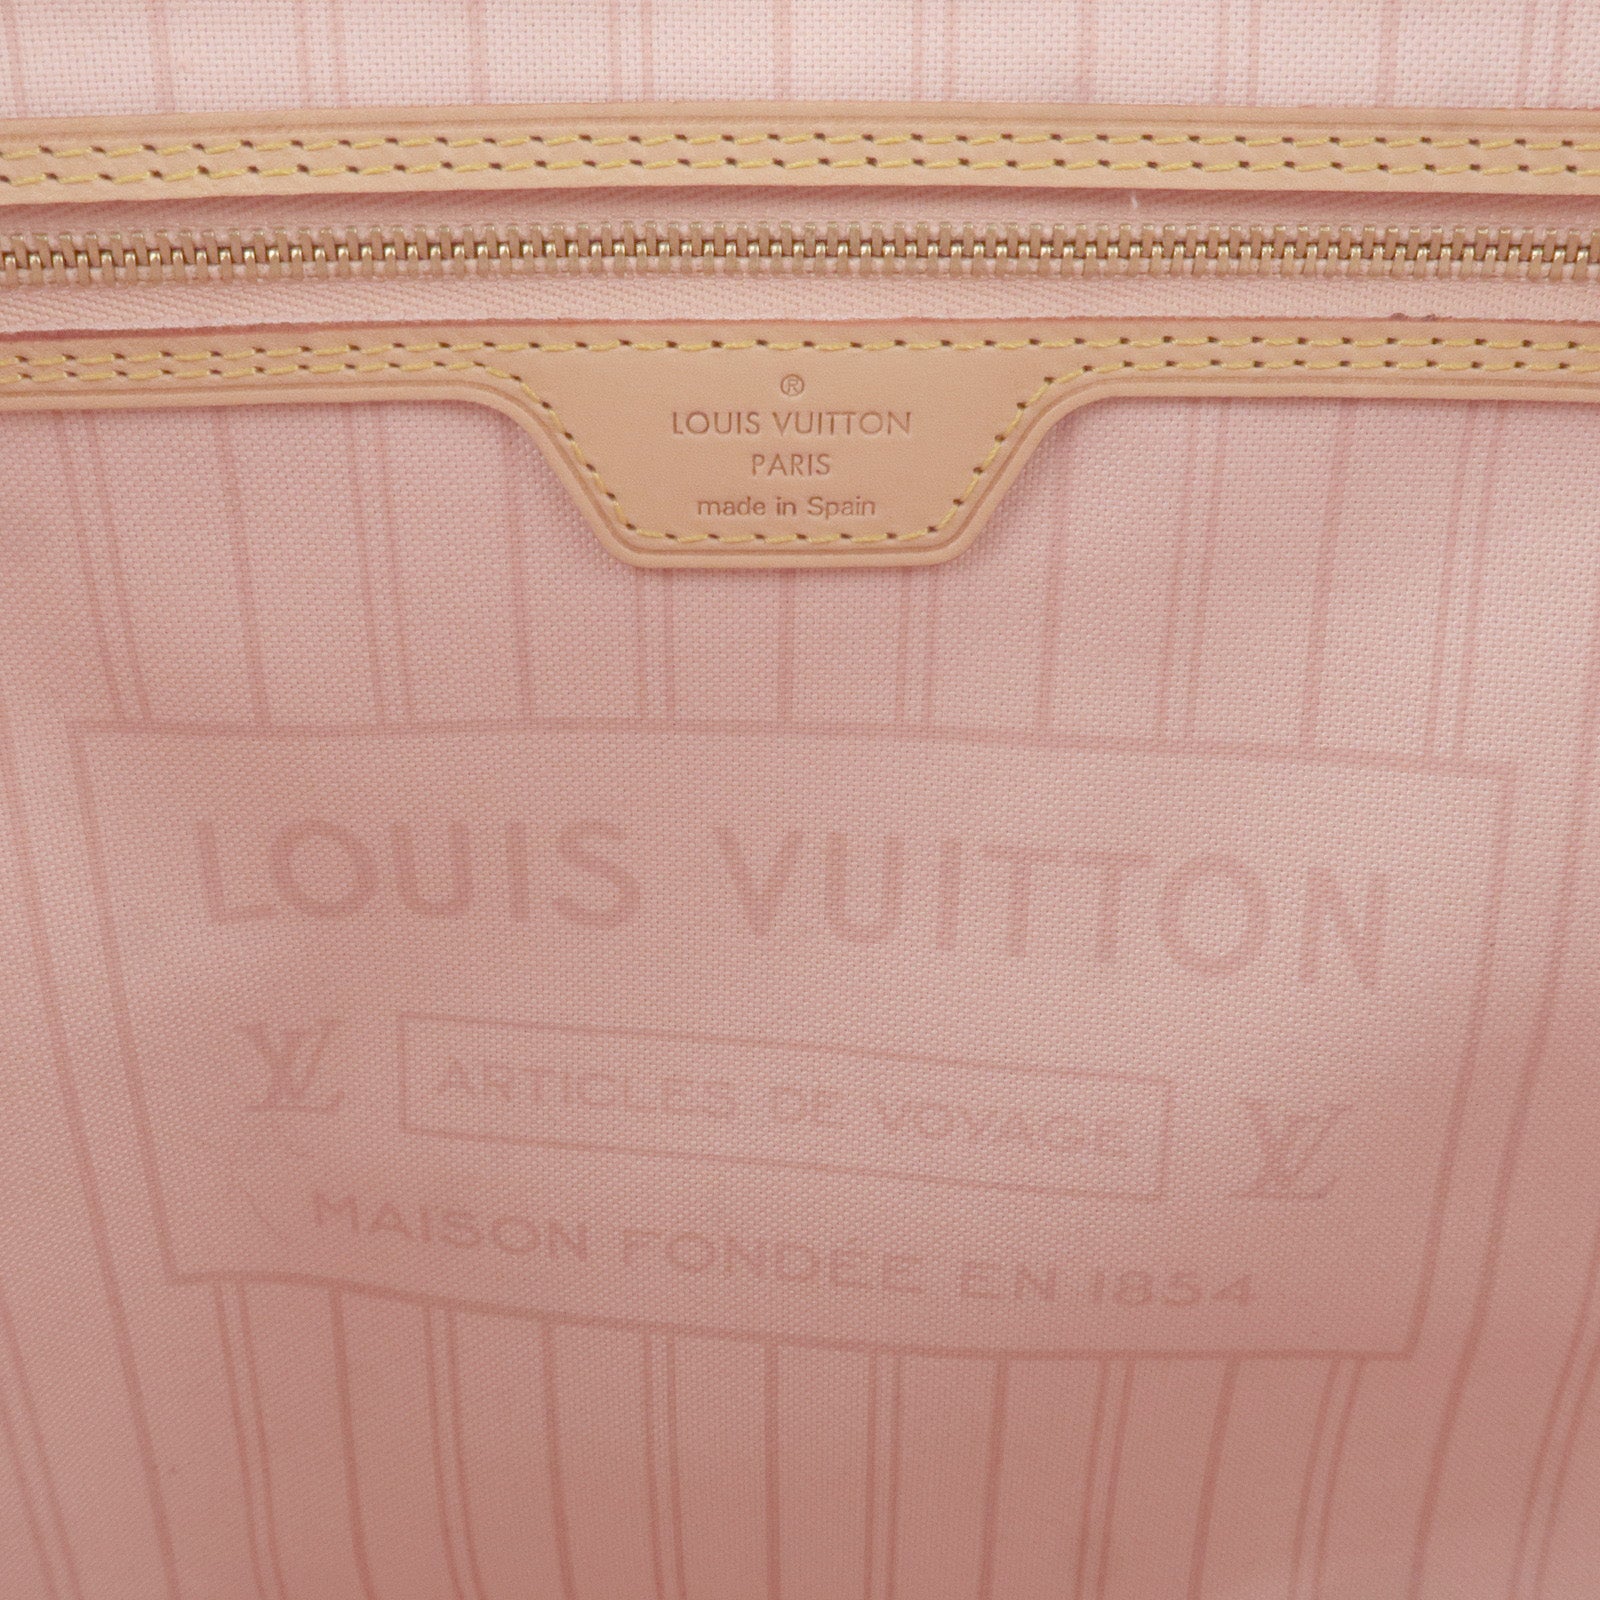 Louis Vuitton Neverfull MM OUI Monogram - THE PURSE AFFAIR